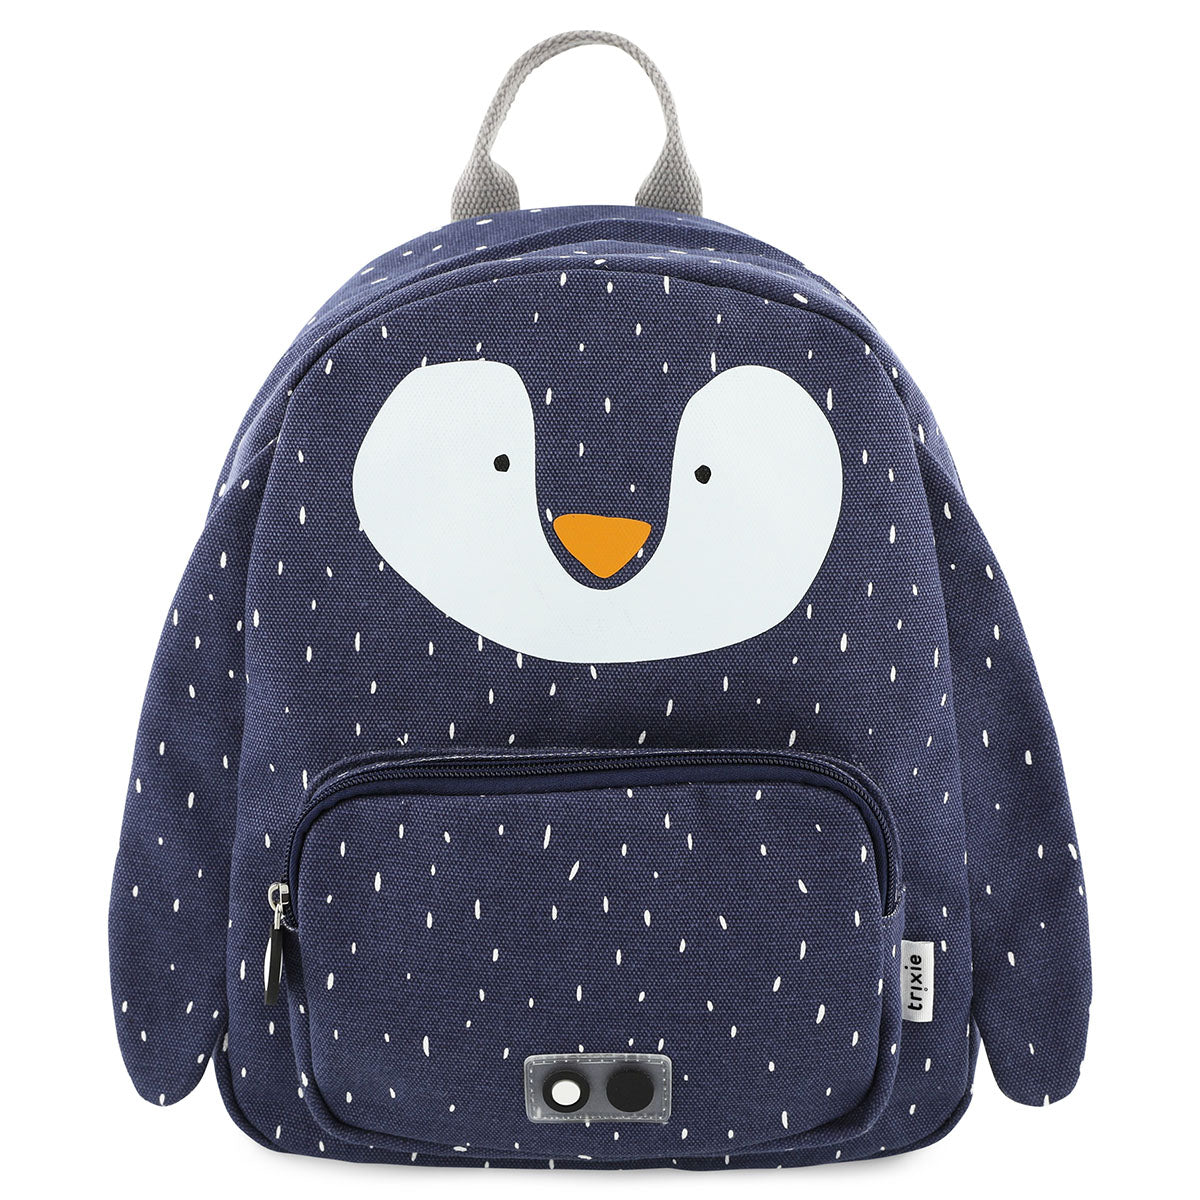 Met de Trixie Mr. Penguin rugzak ben je klaar voor avontuur! In deze blauwe schooltas kan je al je spullen kwijt voor een dagje weg. De blauwe rugzak komt in de vorm van een vrolijke pinguin. VanZus.